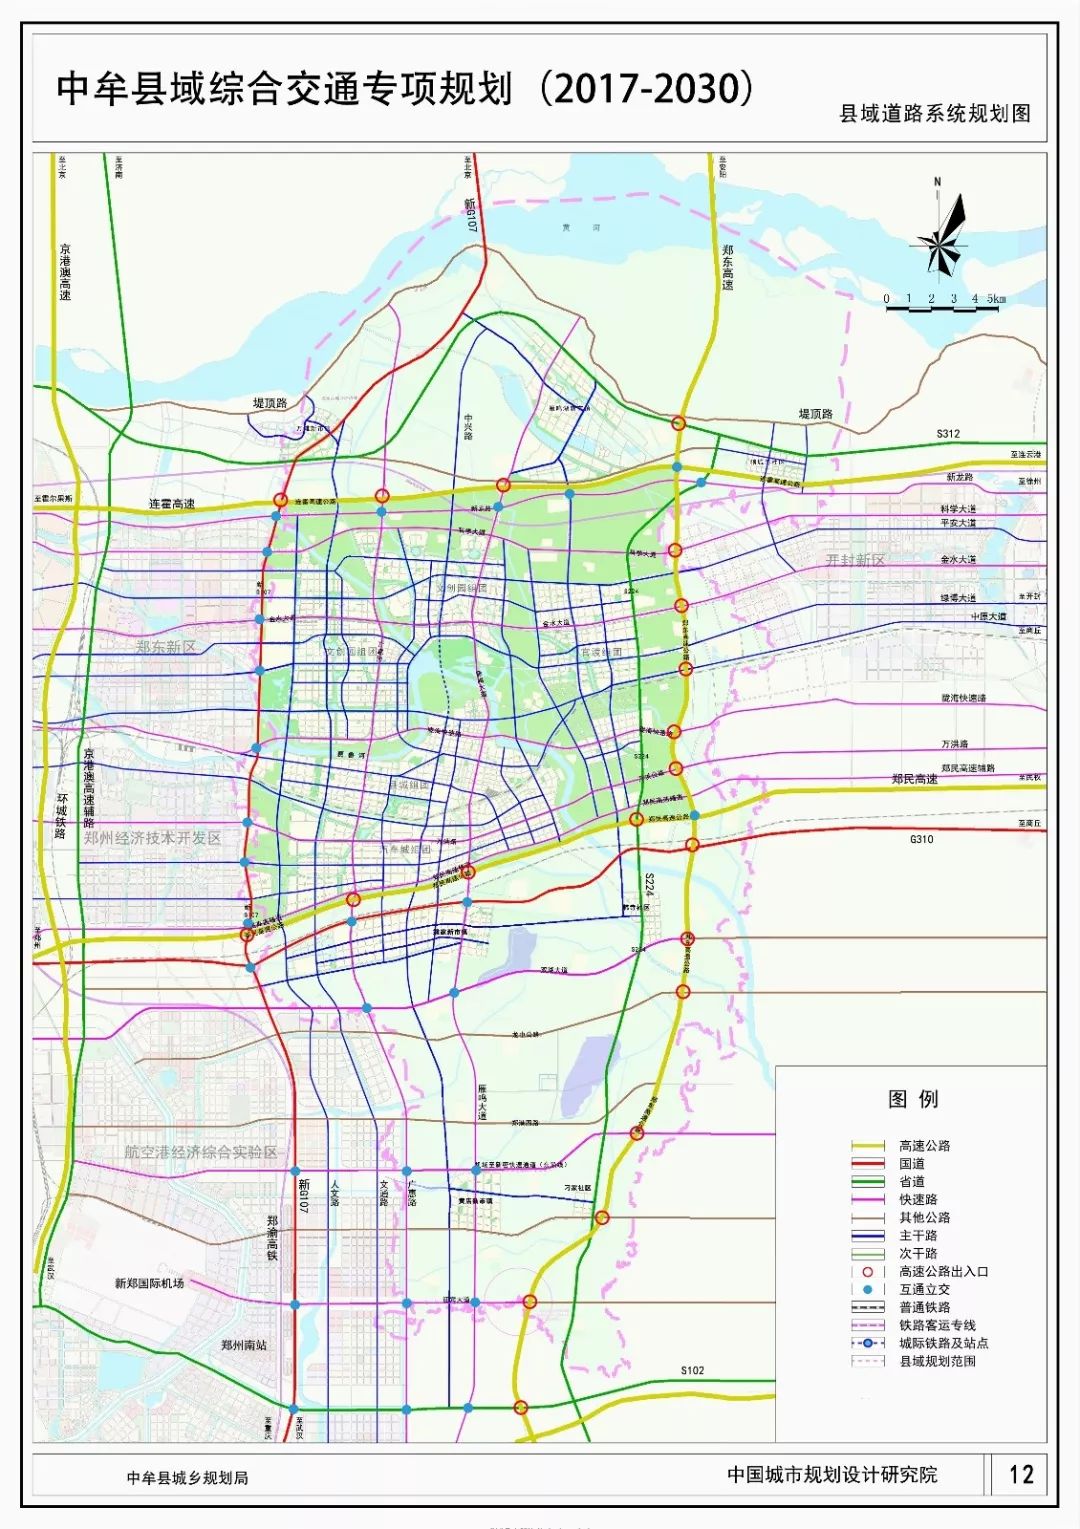 县域道路系统规划图 近年来,中牟县集"铁,公,机"交通优势于一体,各类